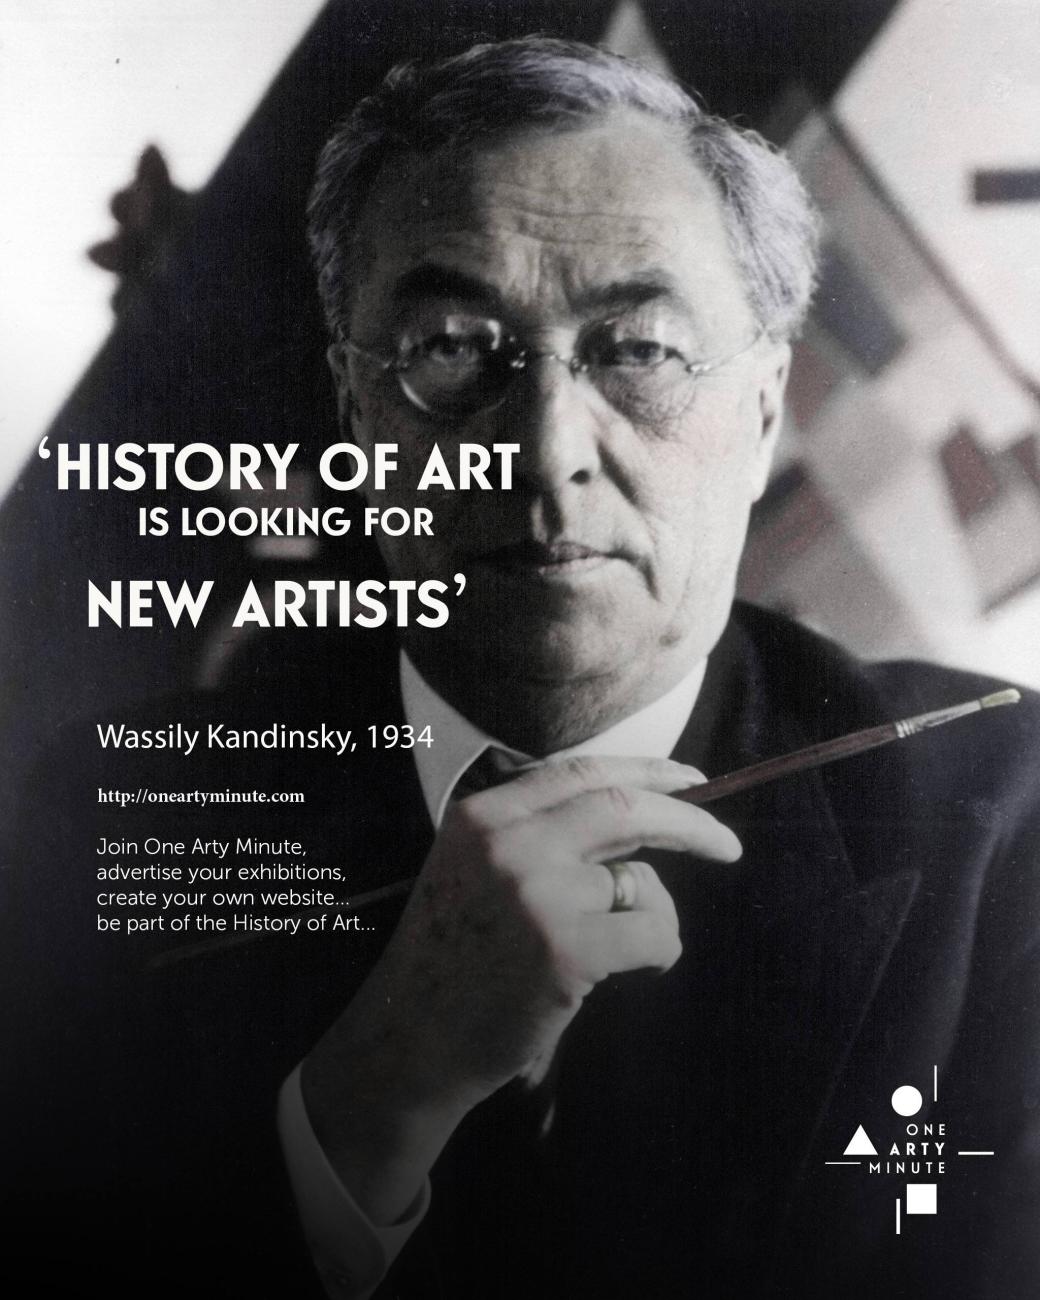 Wassily Kandinsky, Rejoignez One Arty Minute, annoncez vos expositions, vendez vos oeuvres et créez votre catalogue raisonné